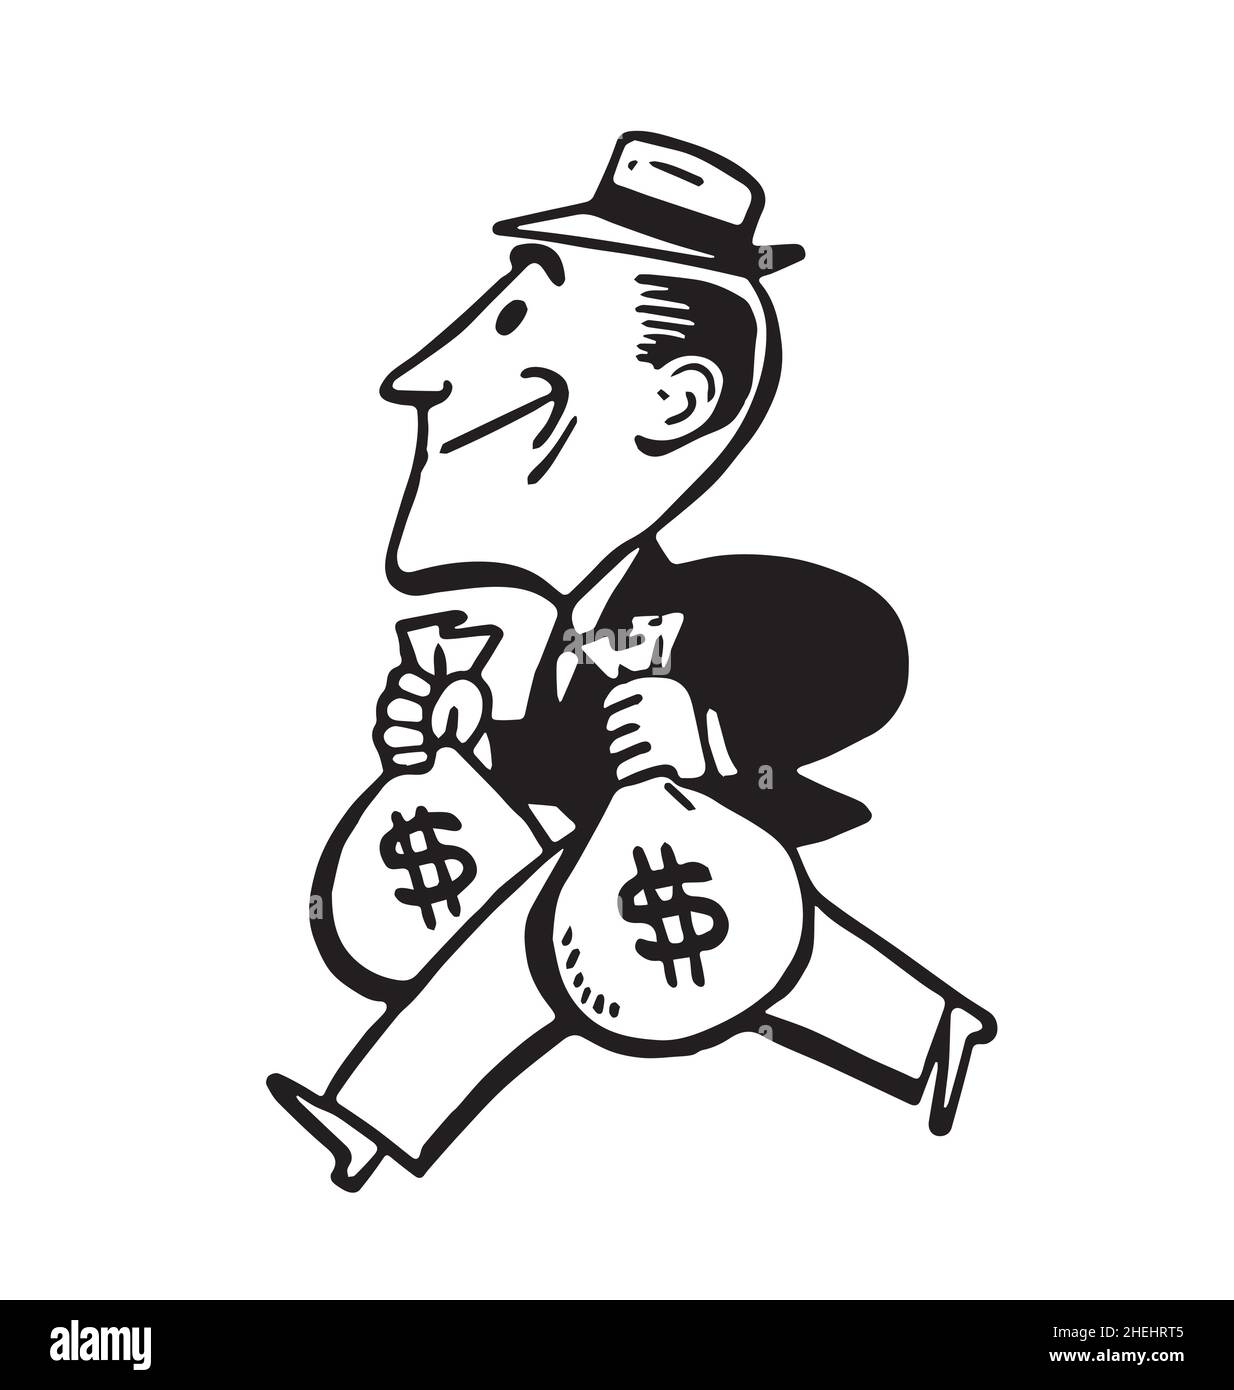 vintage retro cartoon ricco banchiere uomo personaggio trasporto borse di denaro denaro a piedi vista laterale inchiostro disegno vettore isolato su sfondo bianco Illustrazione Vettoriale